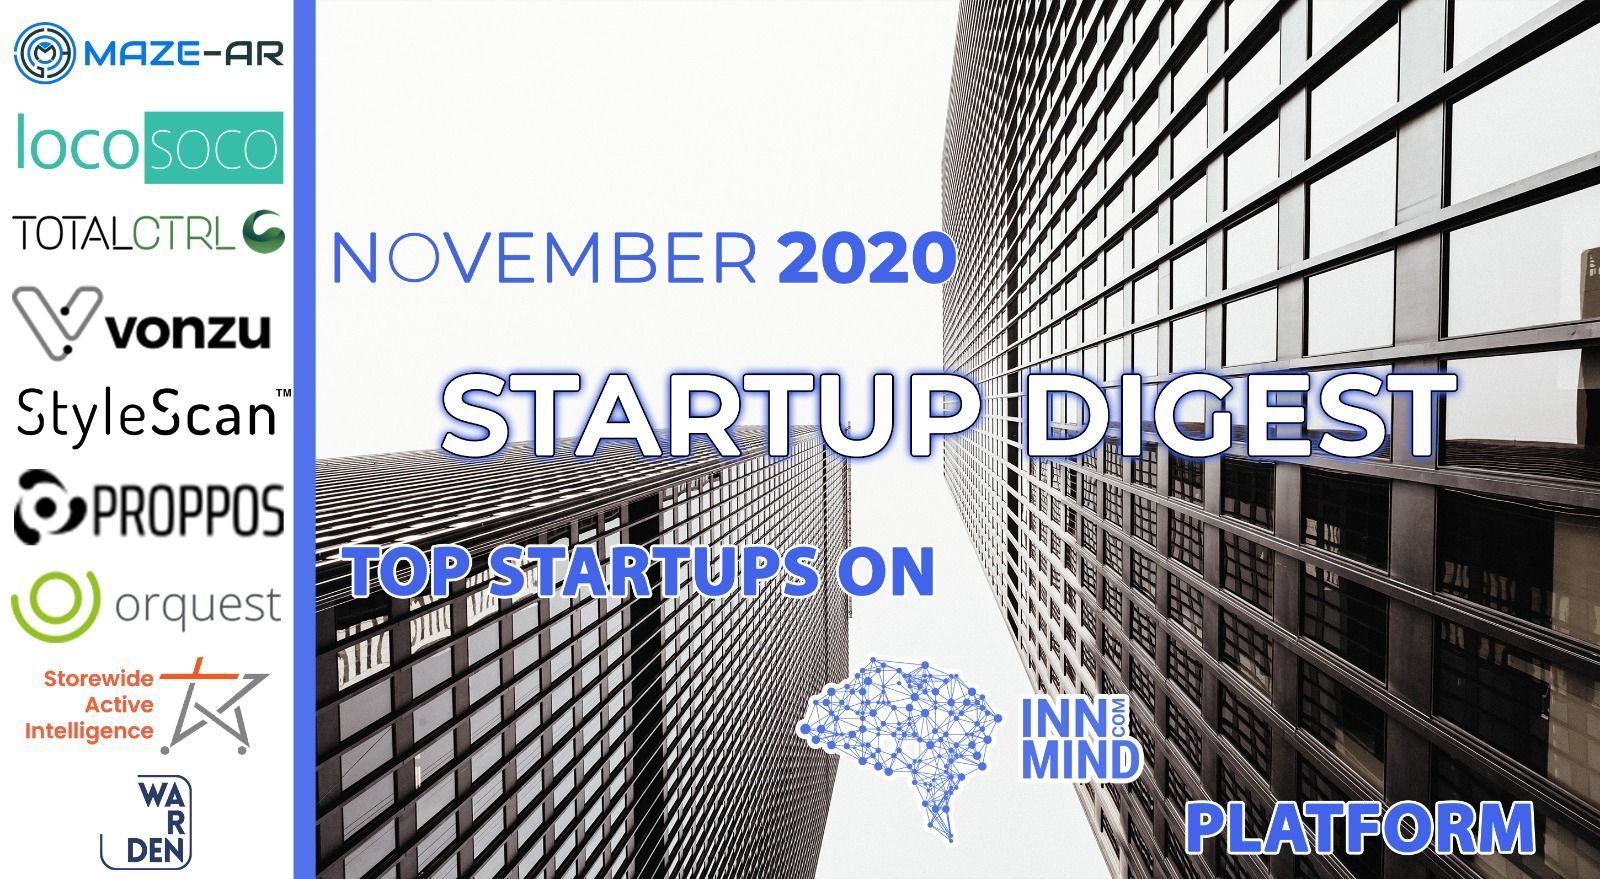 November 2020 Startup Digest: Top Startups on InnMind Platform